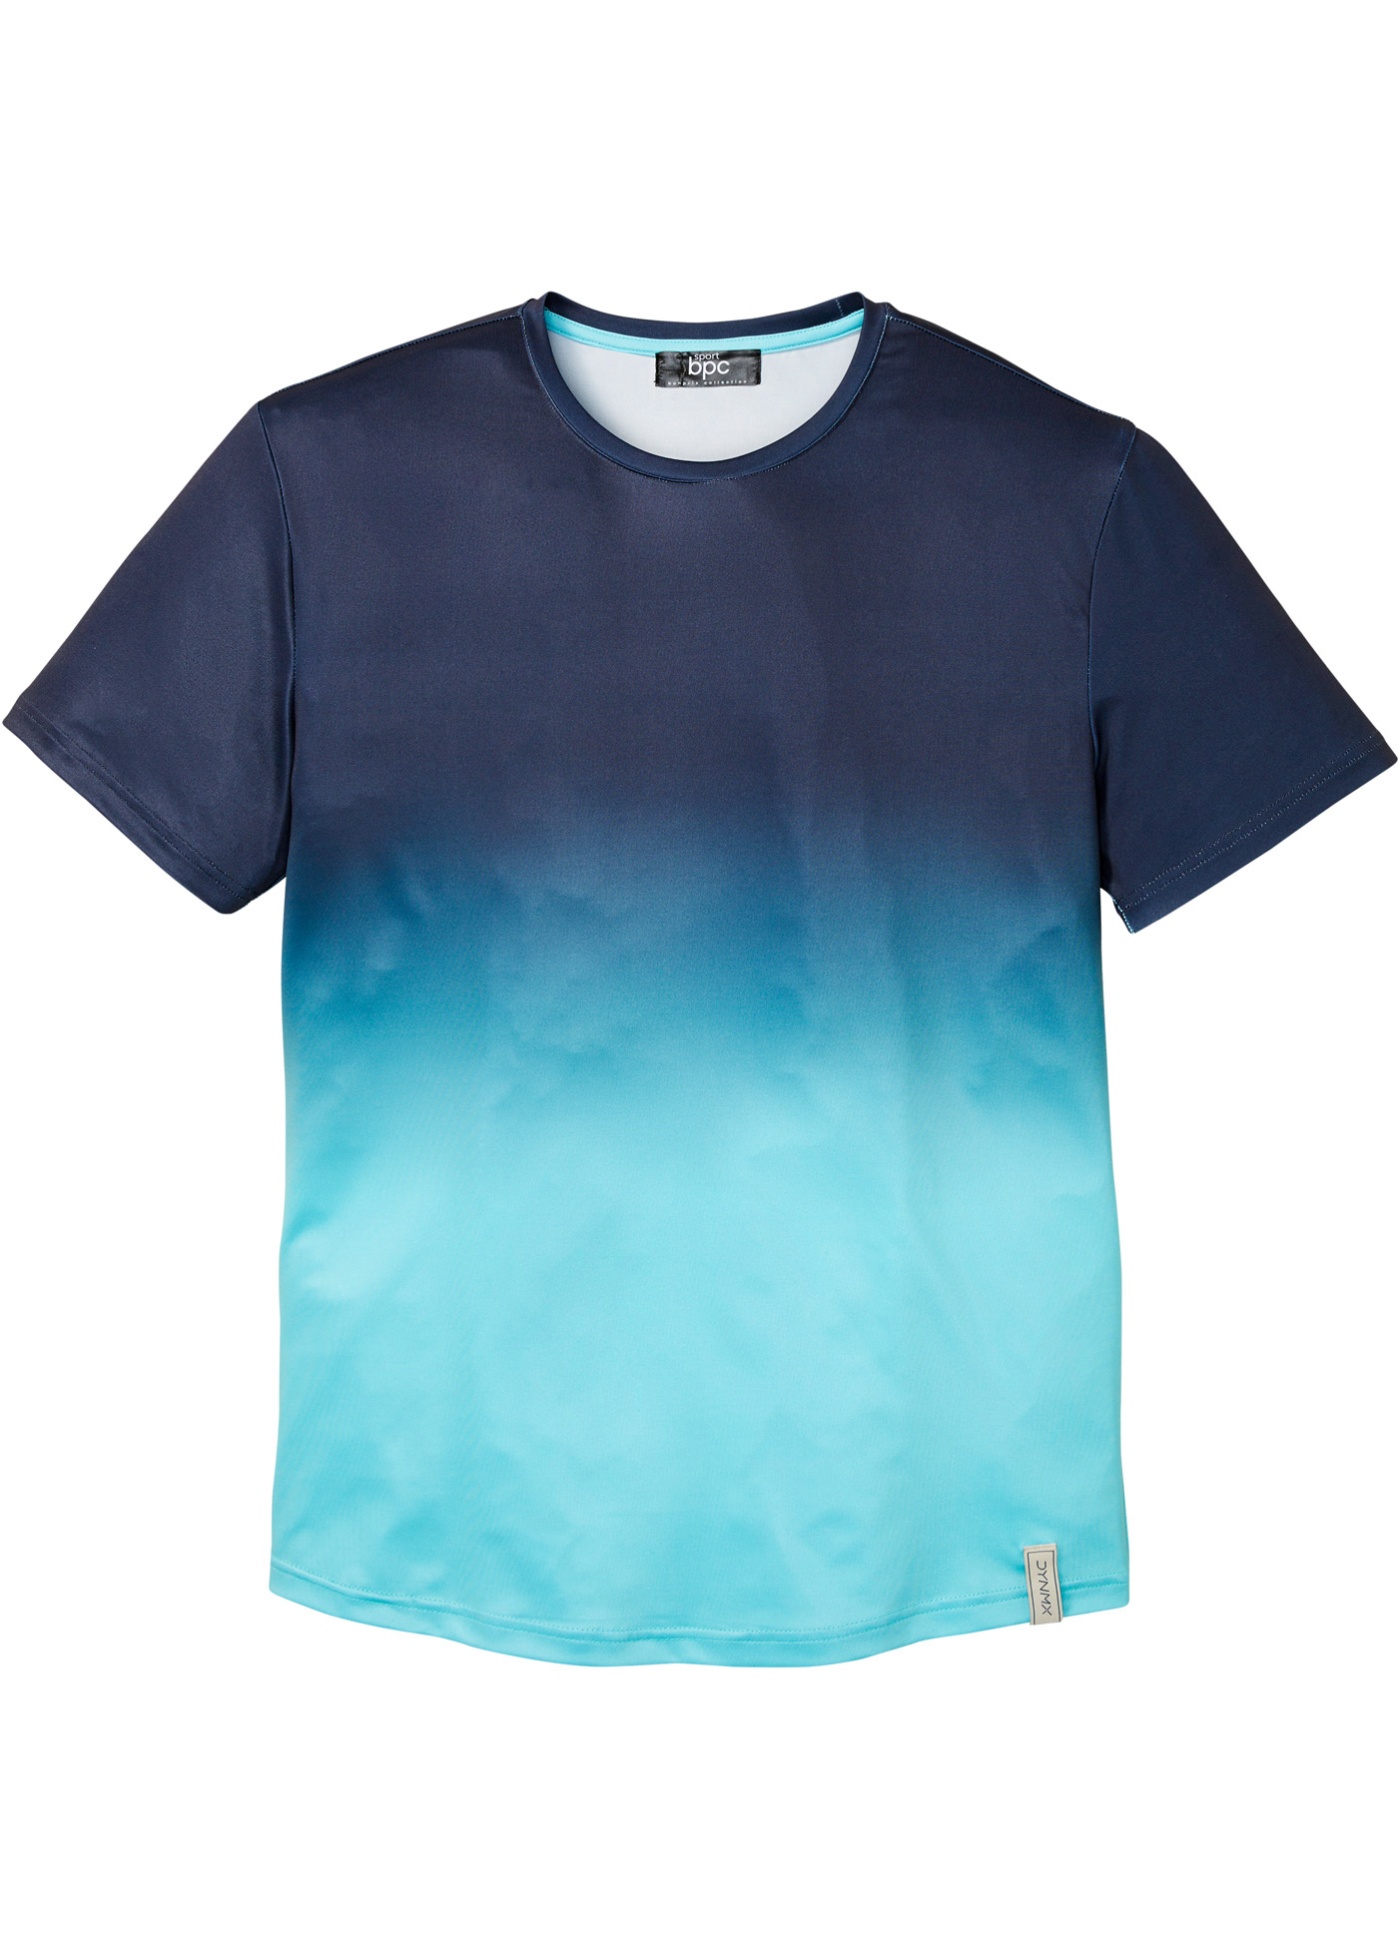 Outdoor T-shirt met kleurverloop